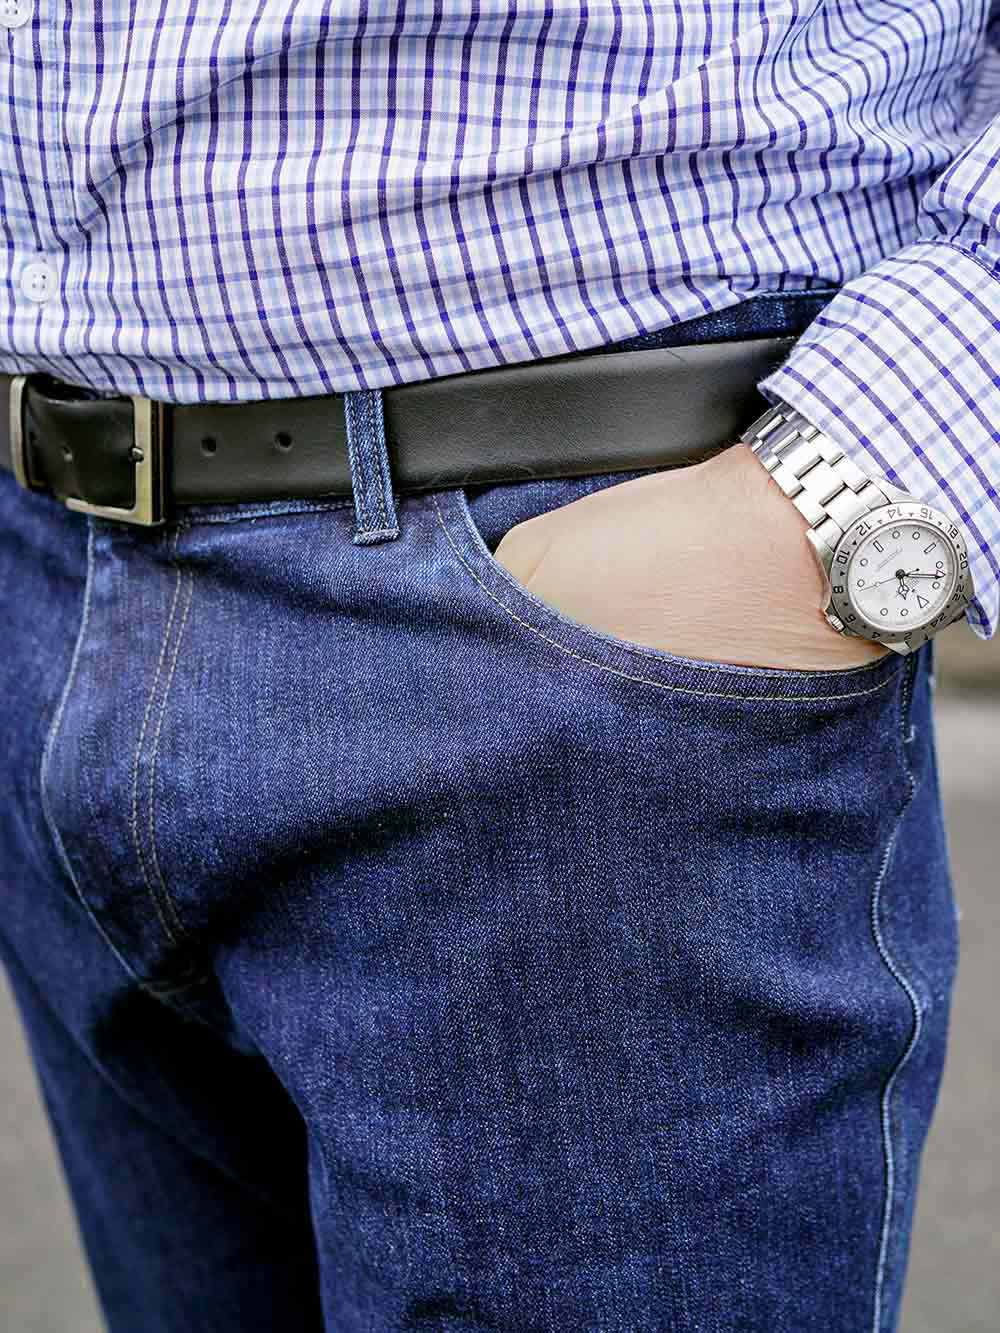 wearing pocket watch jeans